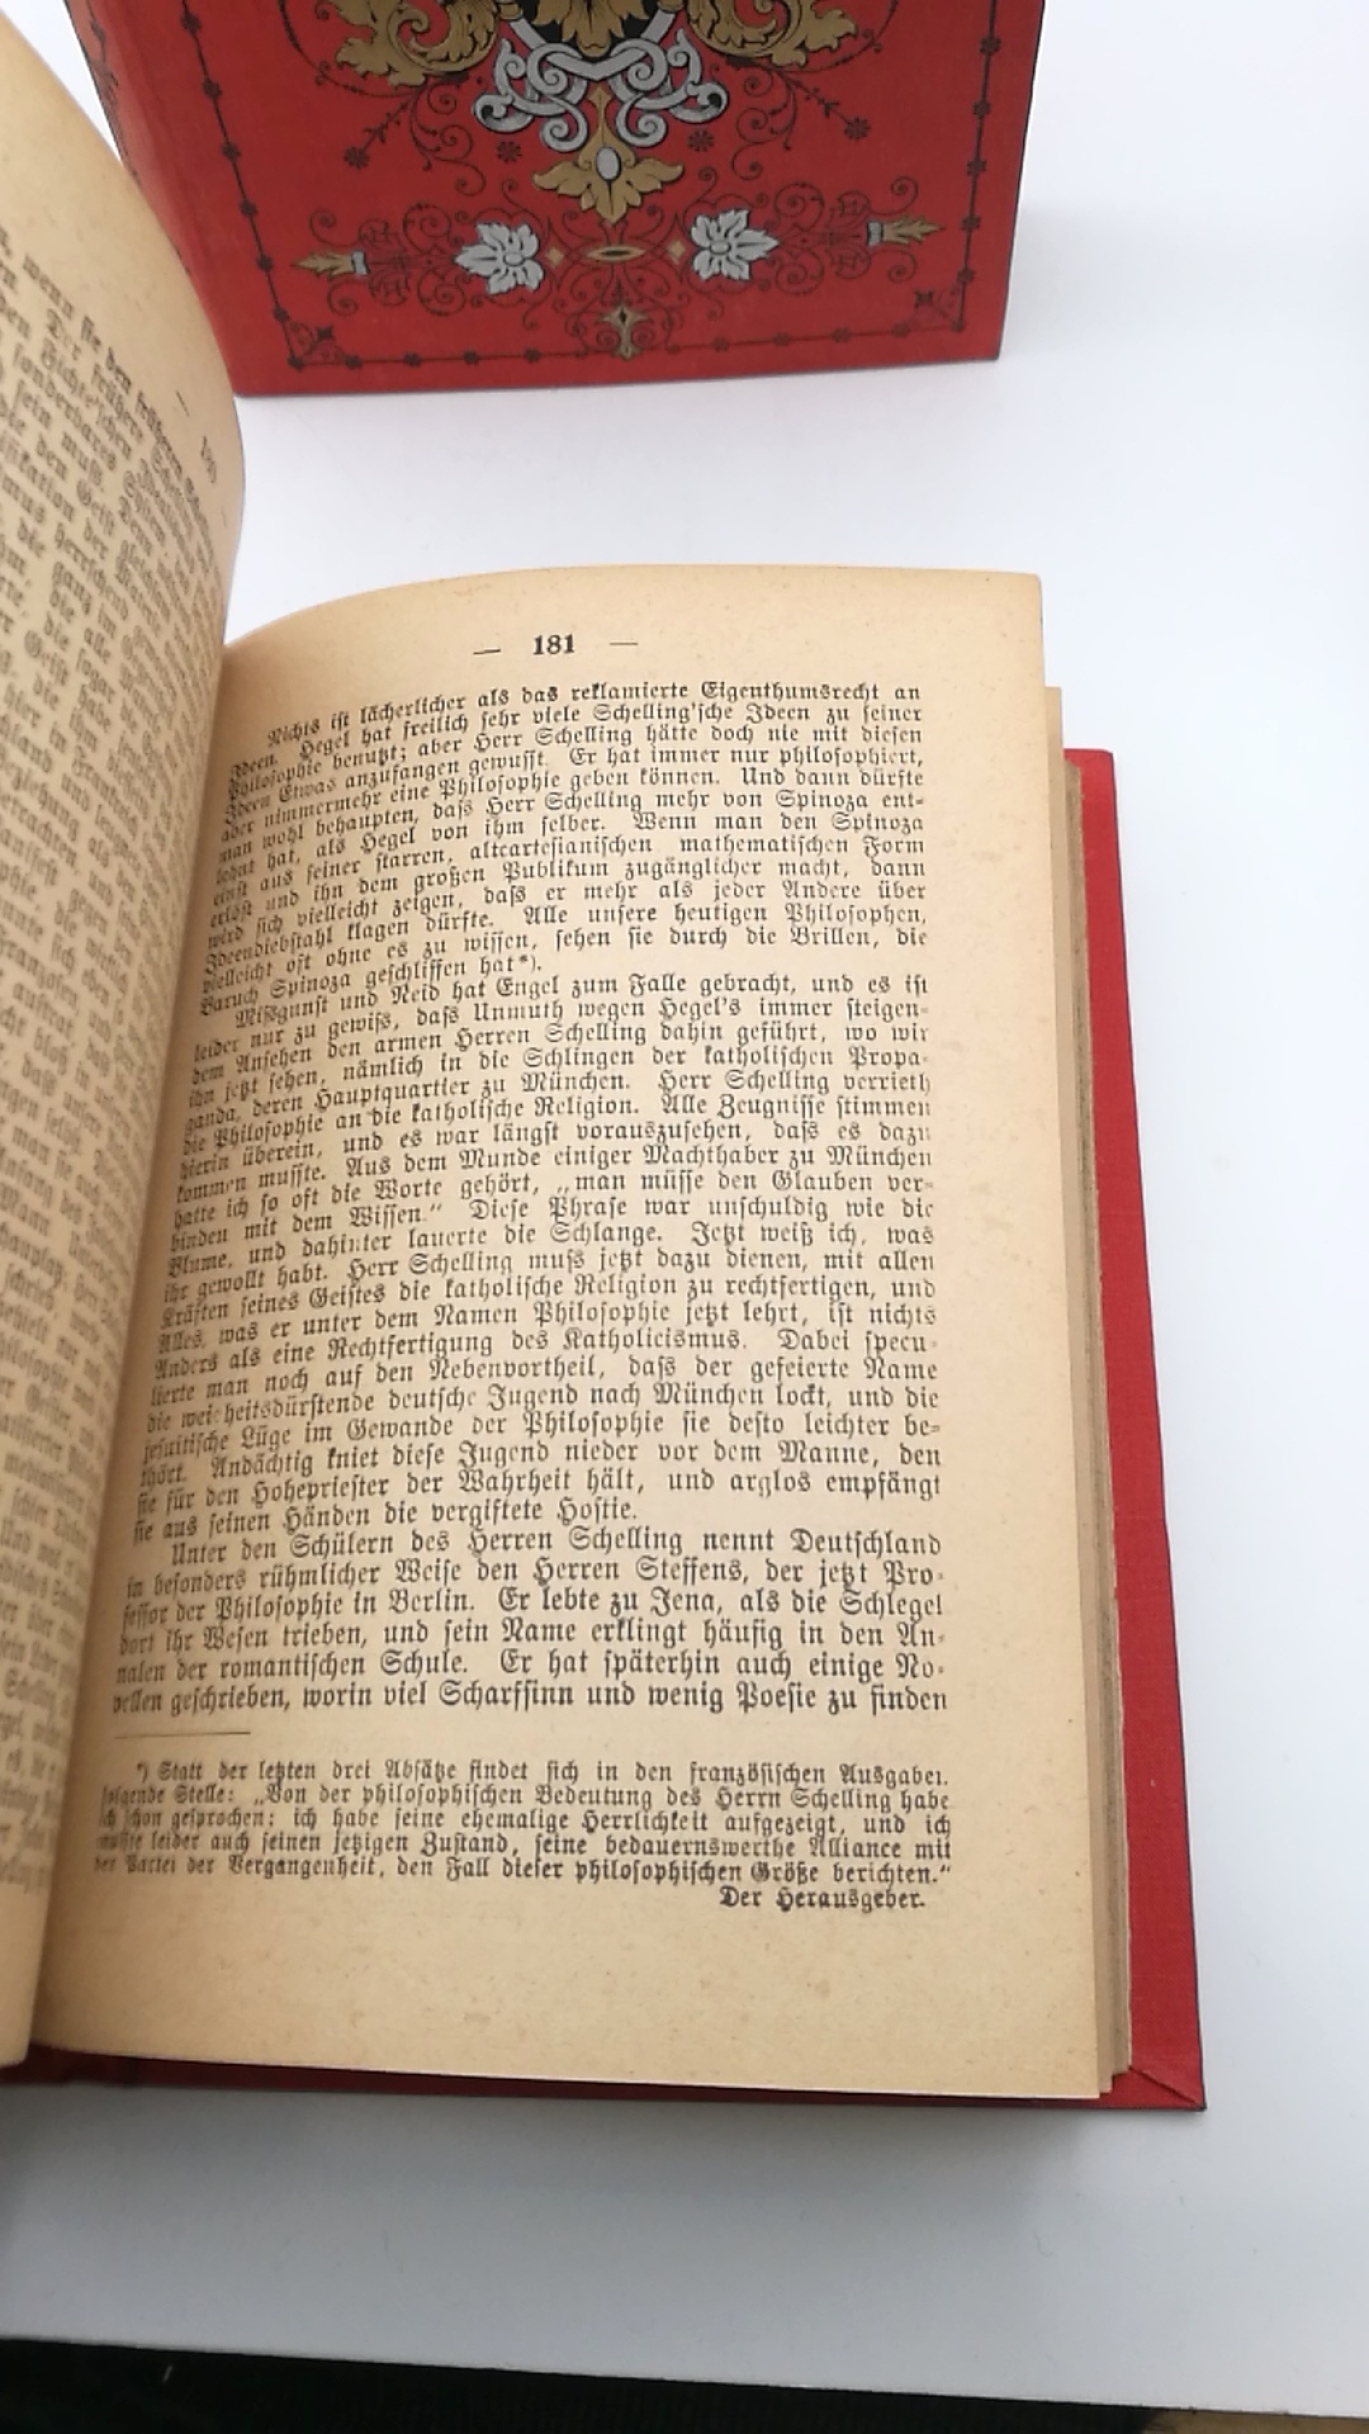 Karpeles, G. ((Hrsg.): Heinrich Heine's Sämmtliche Werke. (=vollst.) Ausgabe in 12 Bänden (in 4 Büchern)